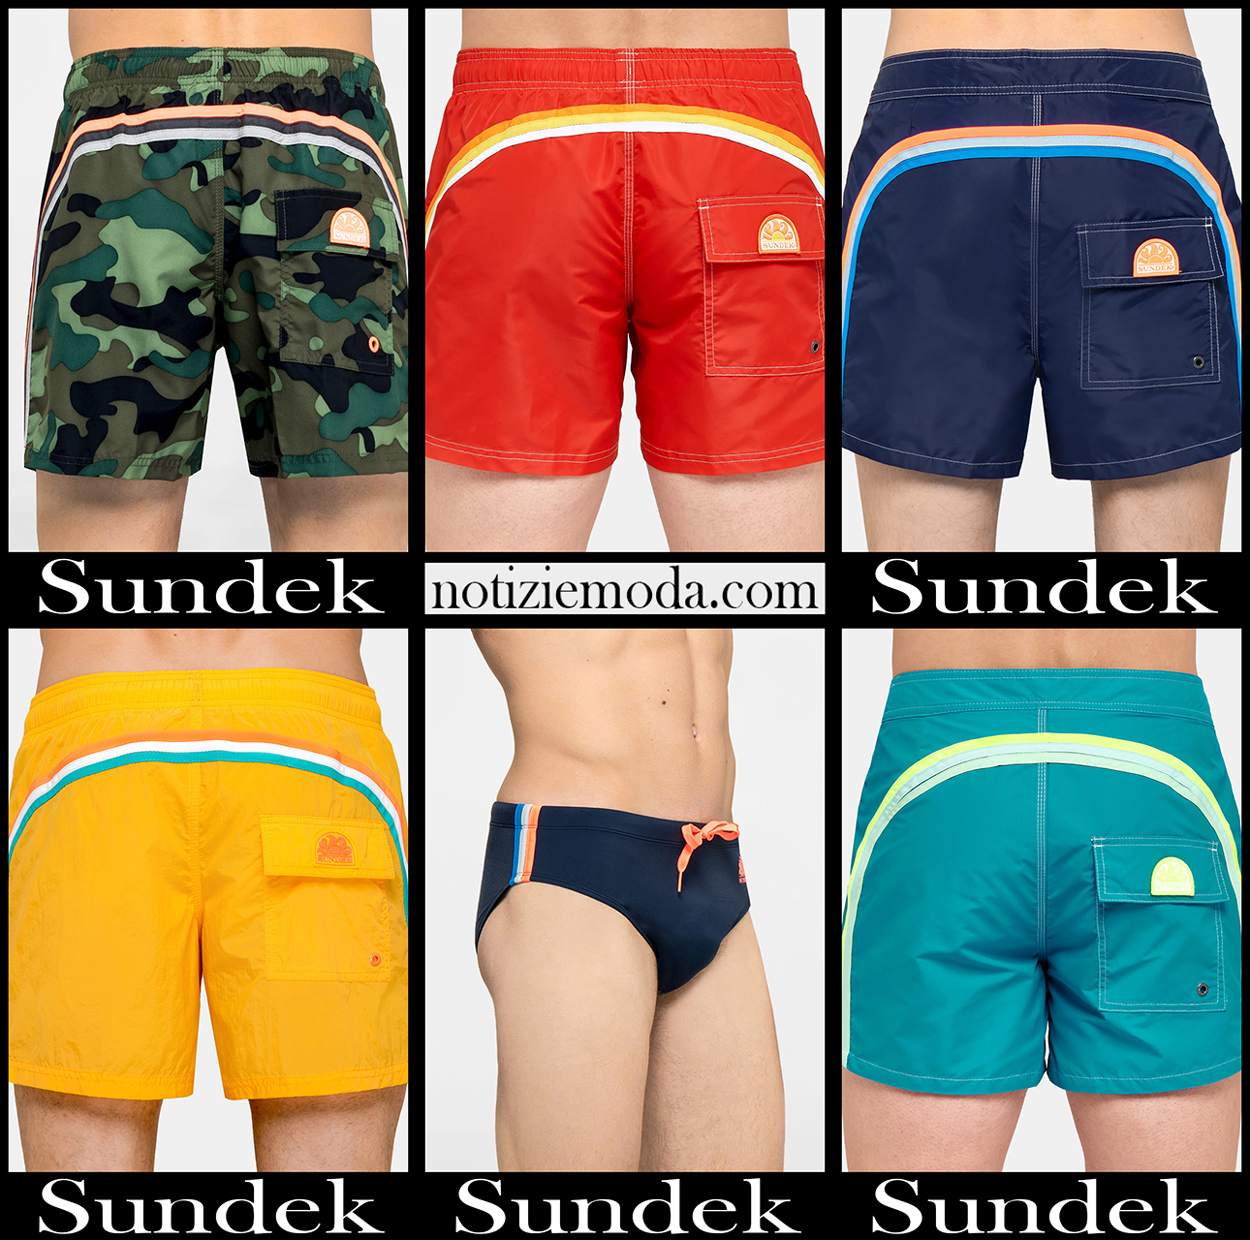 Boardshorts Sundek 2020 costumi da bagno uomo